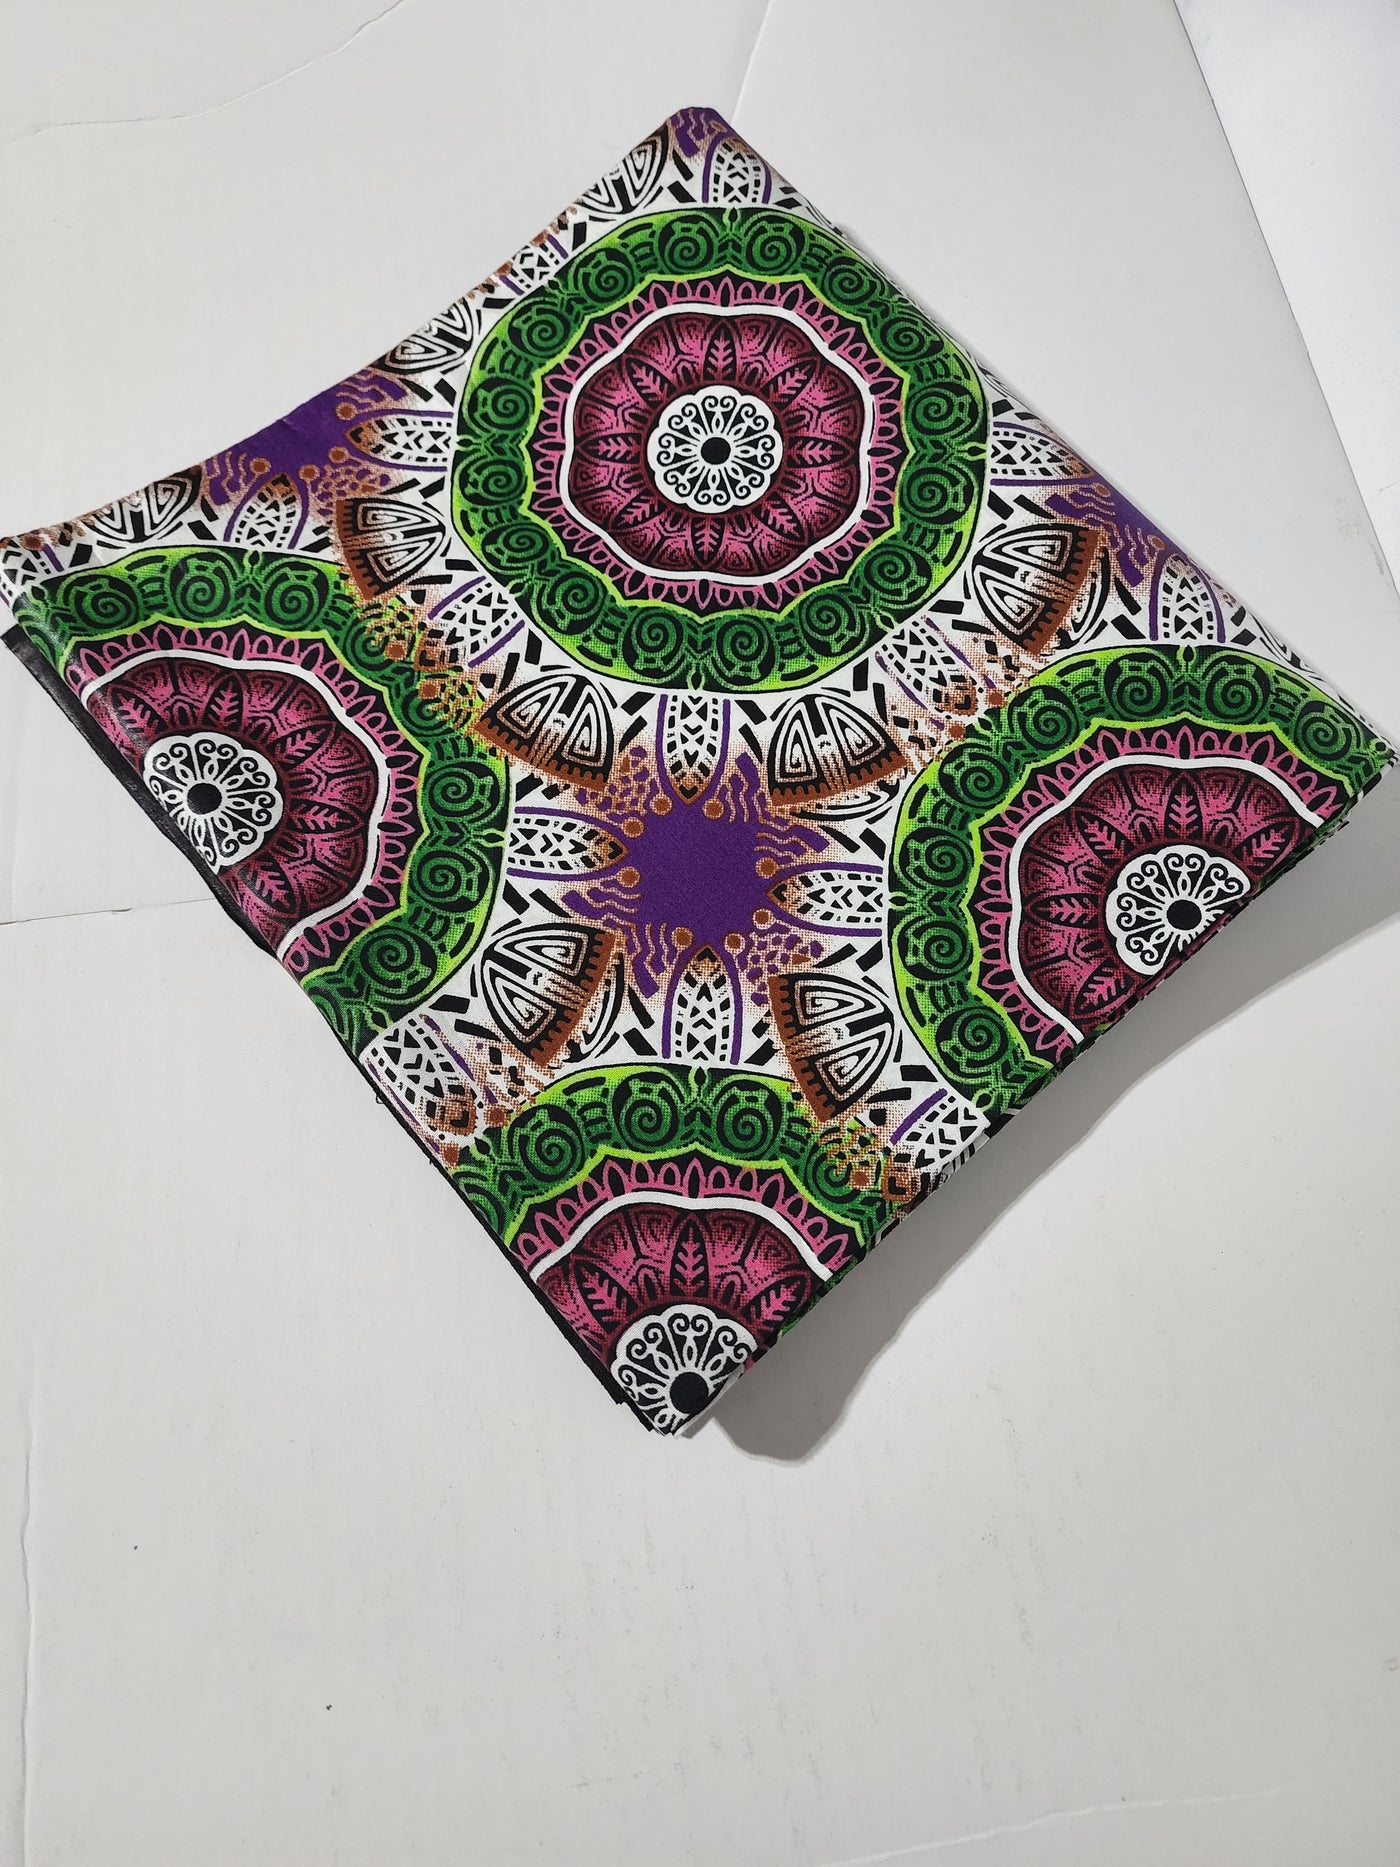 Purple and Green Ankara Fabric, ACS0219